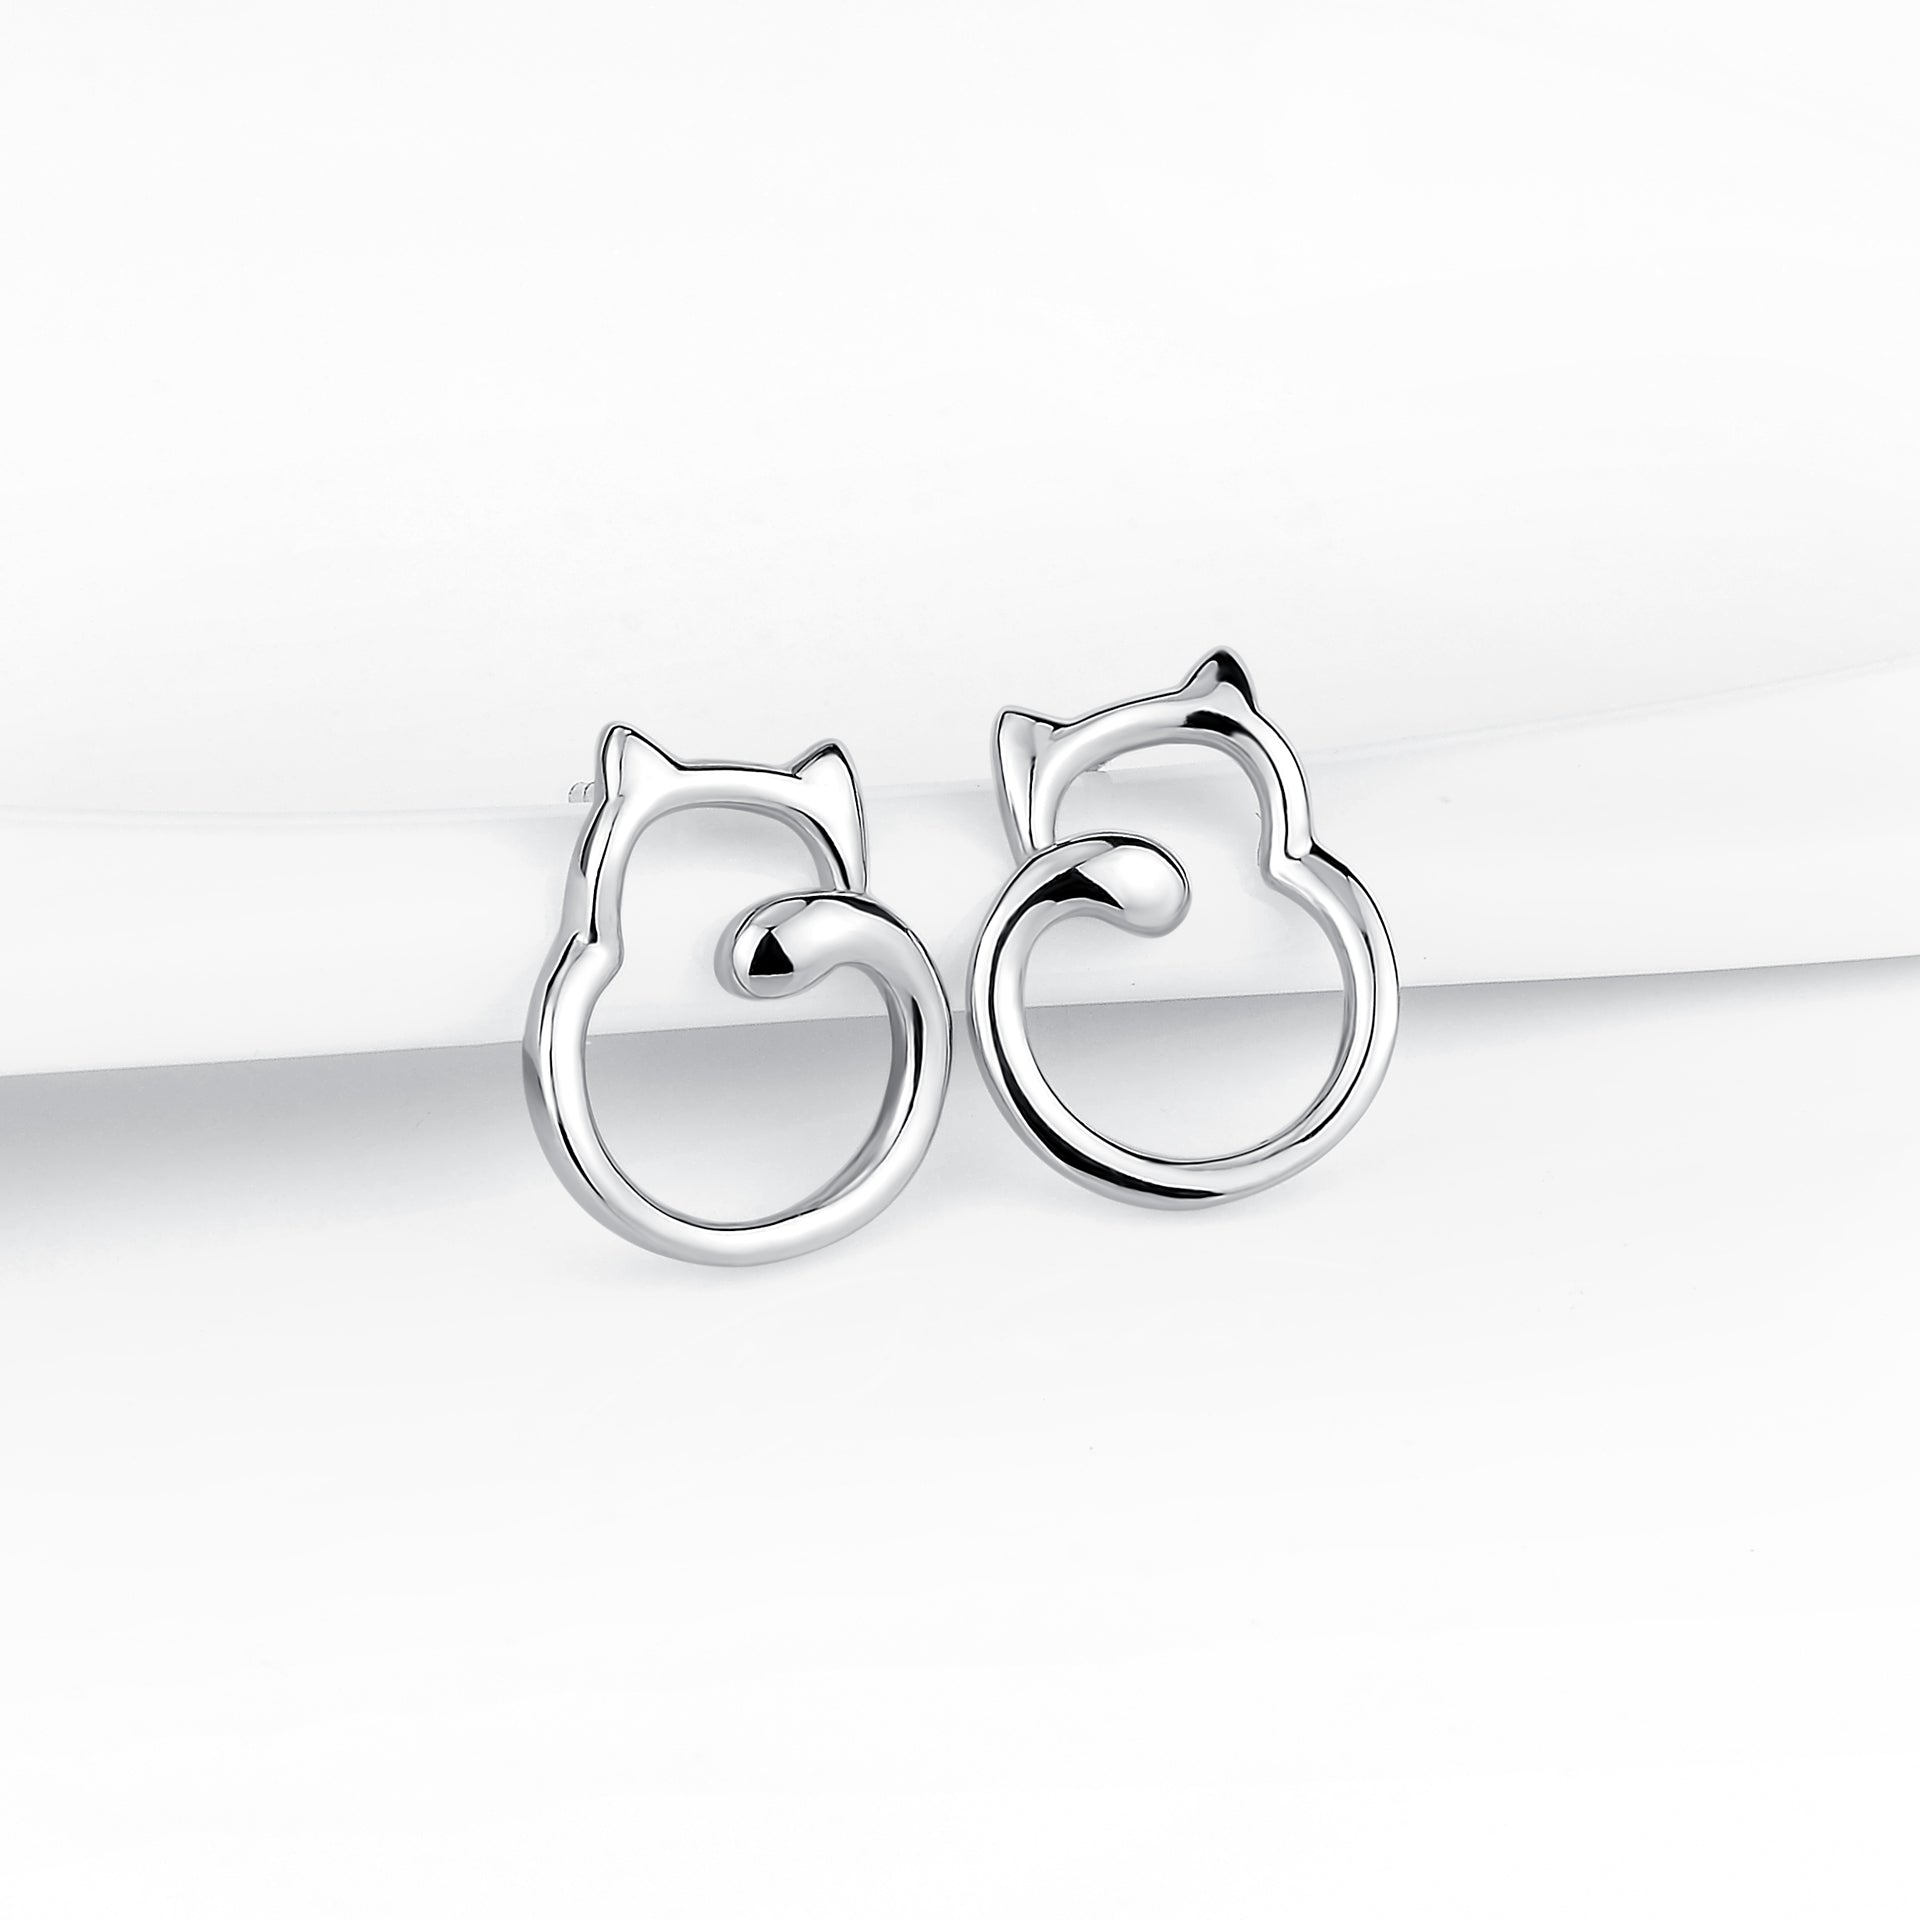 Cat Silver Shape Earrings Cheap Price Women's Charm Fashion Earrings